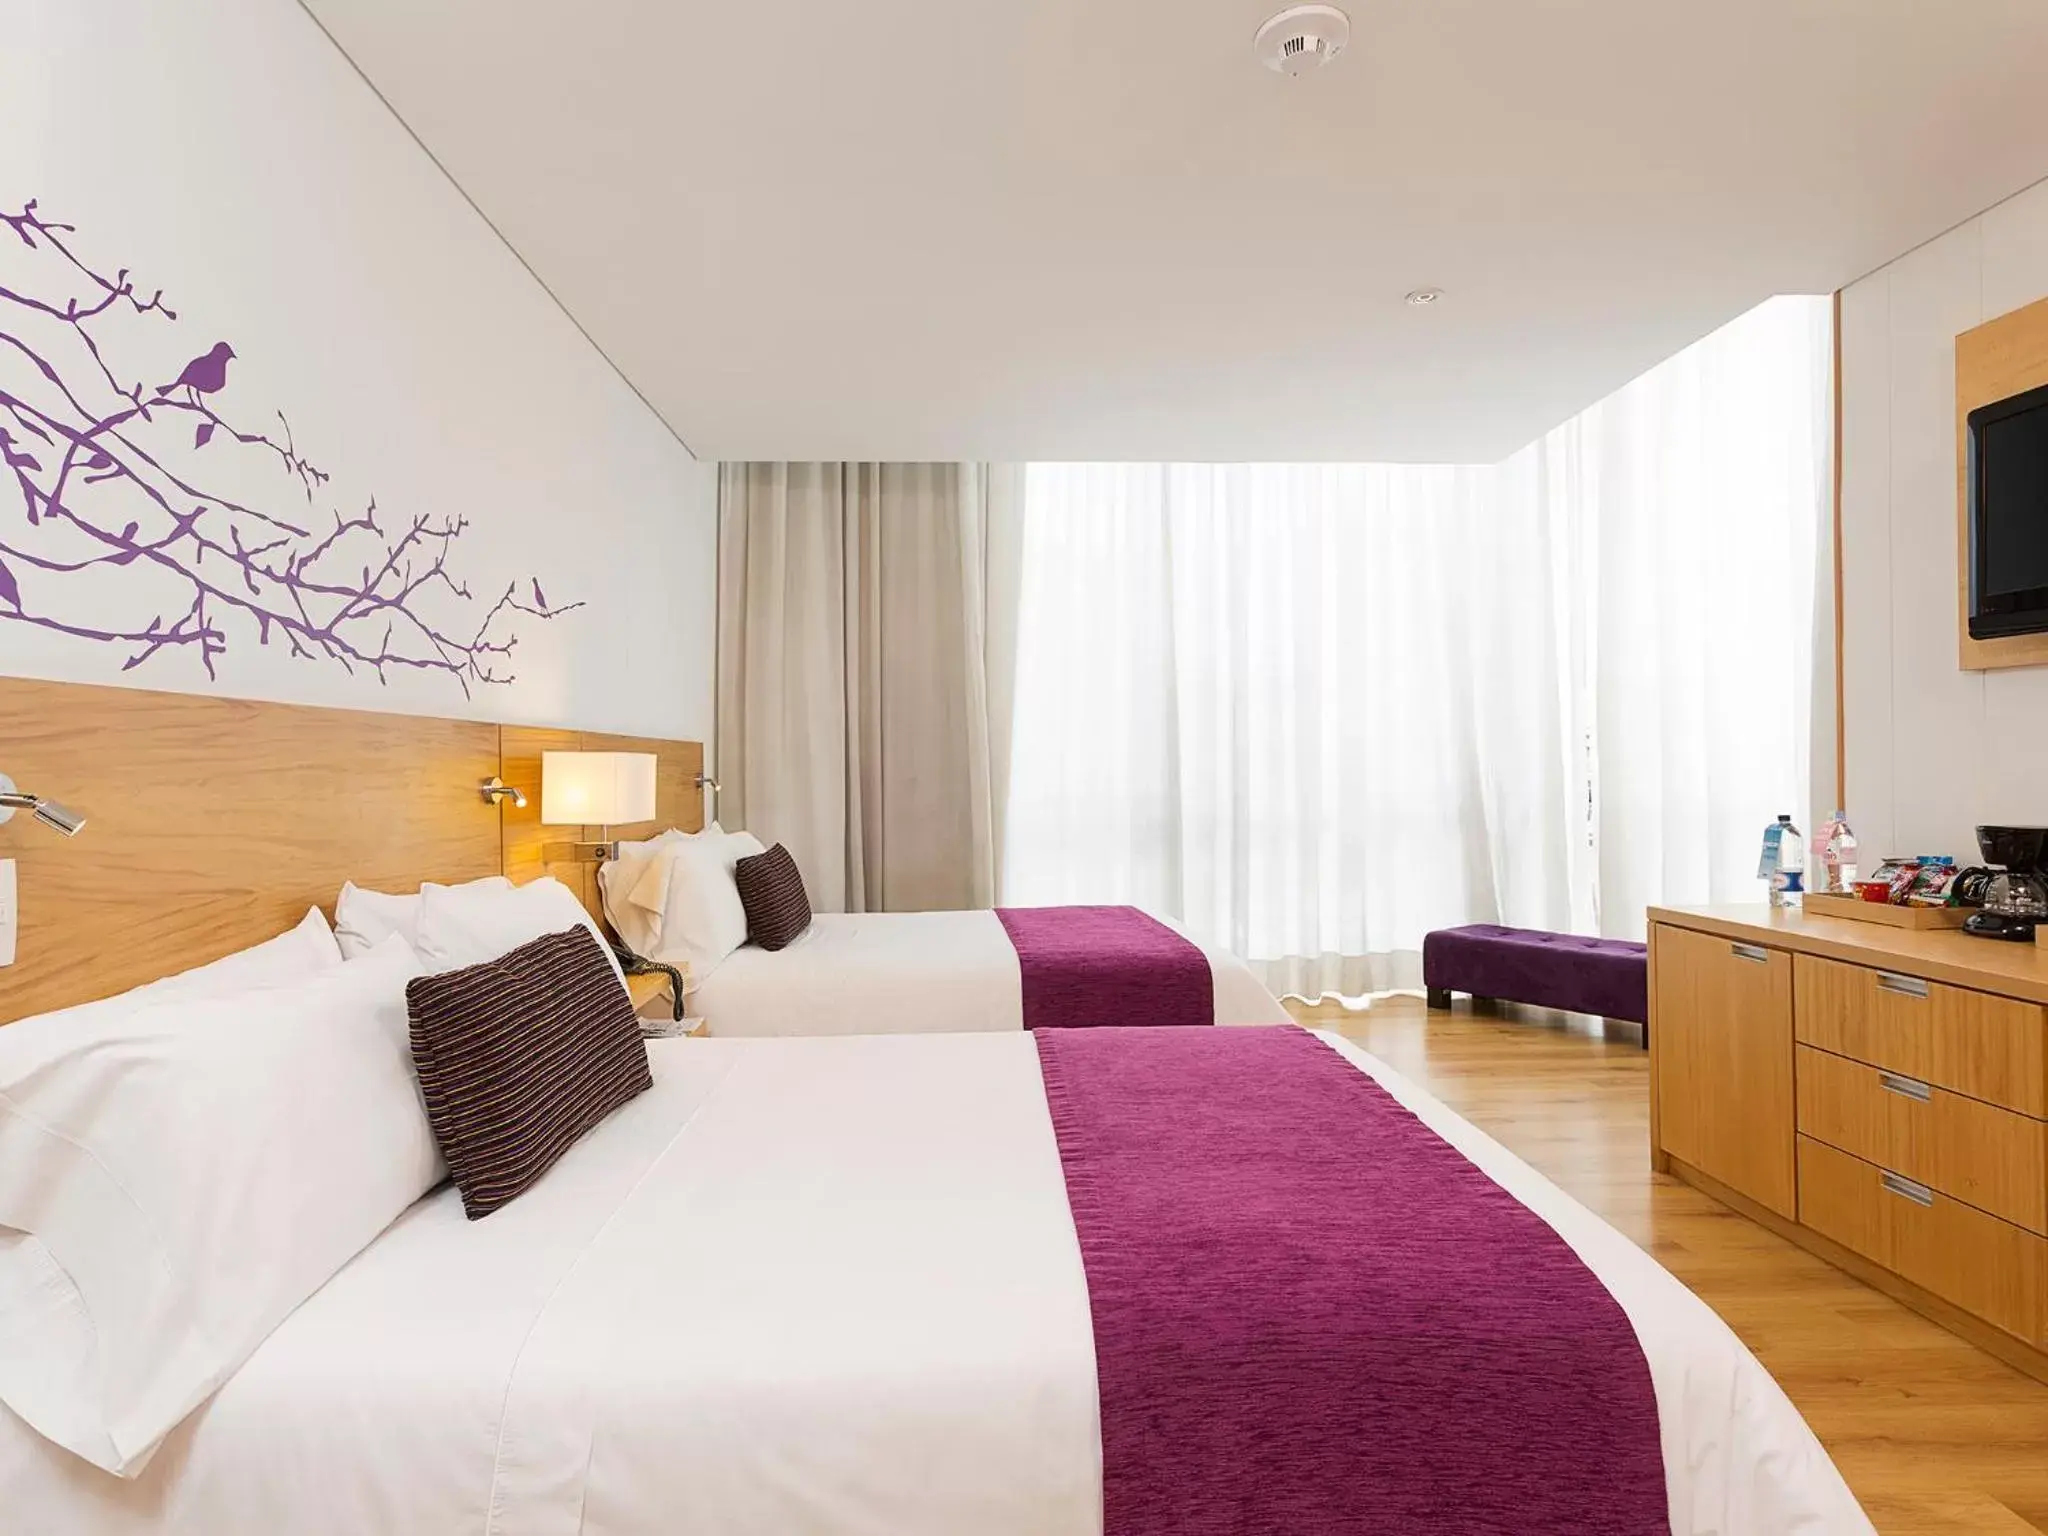 Bedroom, Room Photo in Hotel bh Parque 93